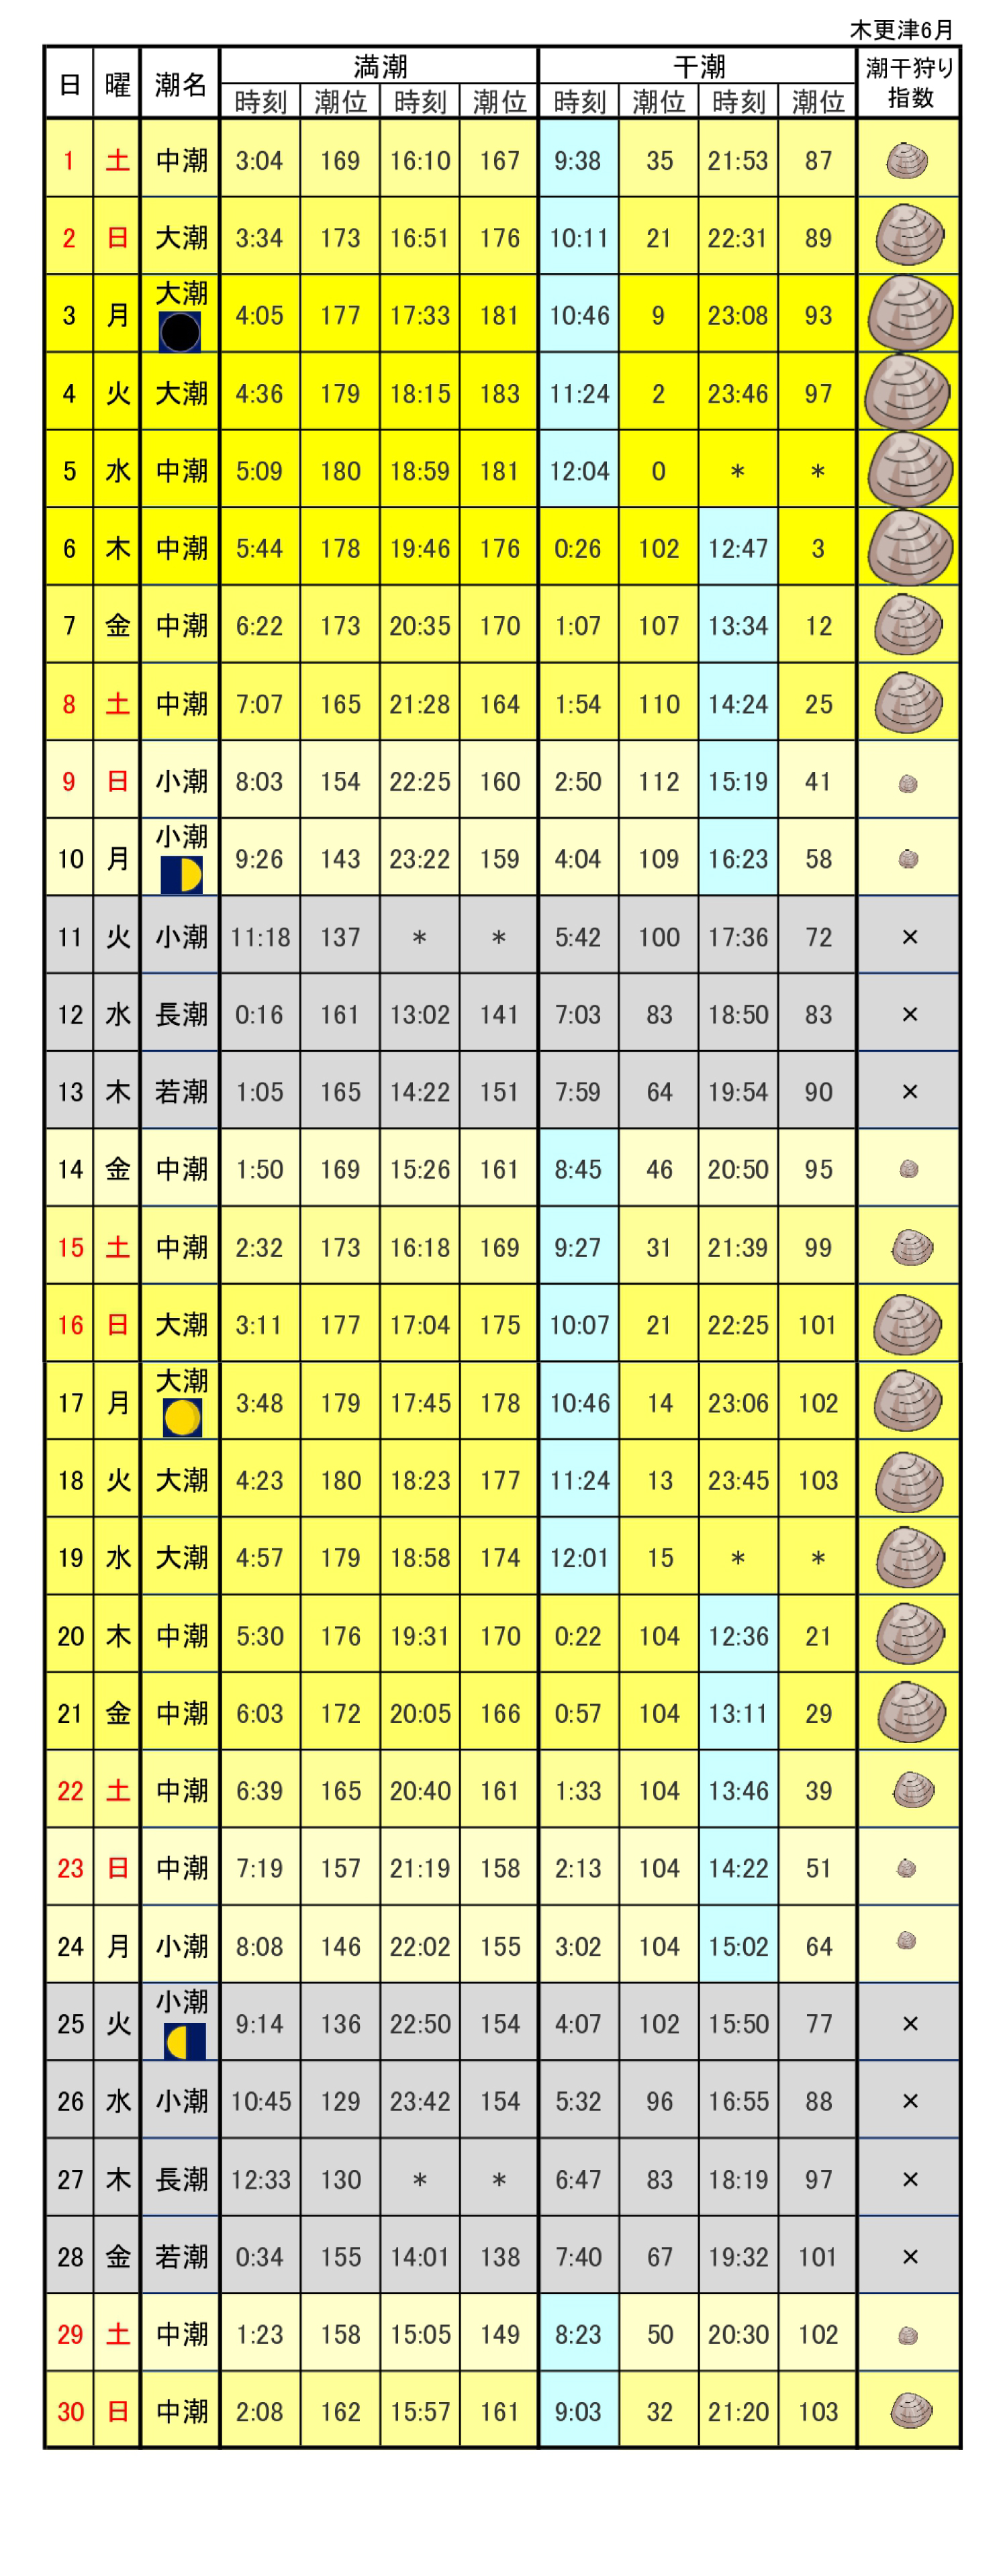 木更津港潮干狩りカレンダー2019年6月